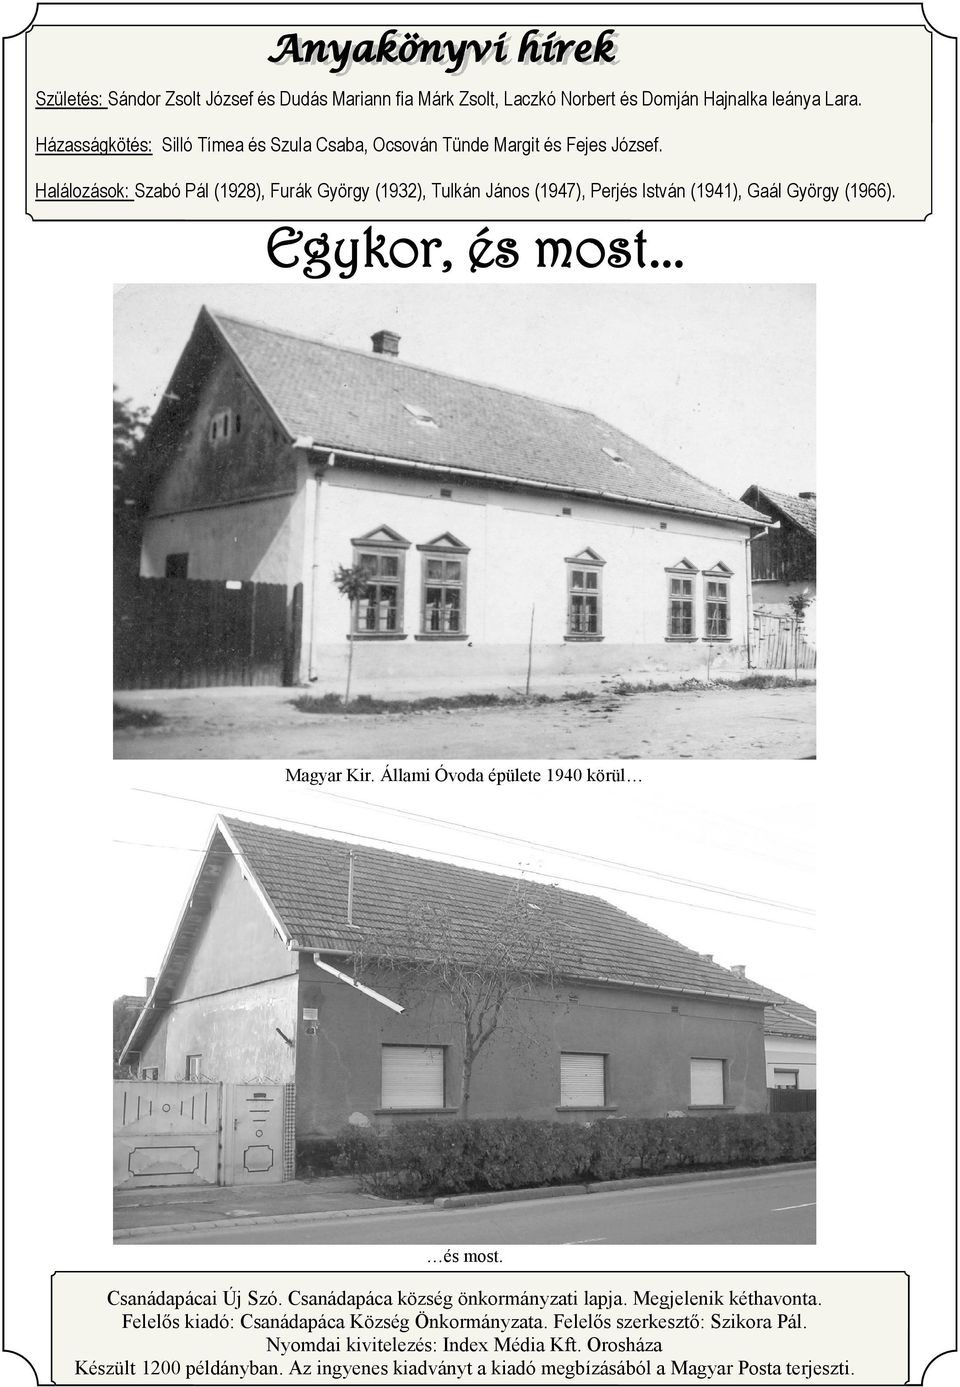 Halálozások: Szabó Pál (1928), Furák György (1932), Tulkán János (1947), Perjés István (1941), Gaál György (1966). Magyar Kir. Állami Óvoda épülete 1940 körül és most.